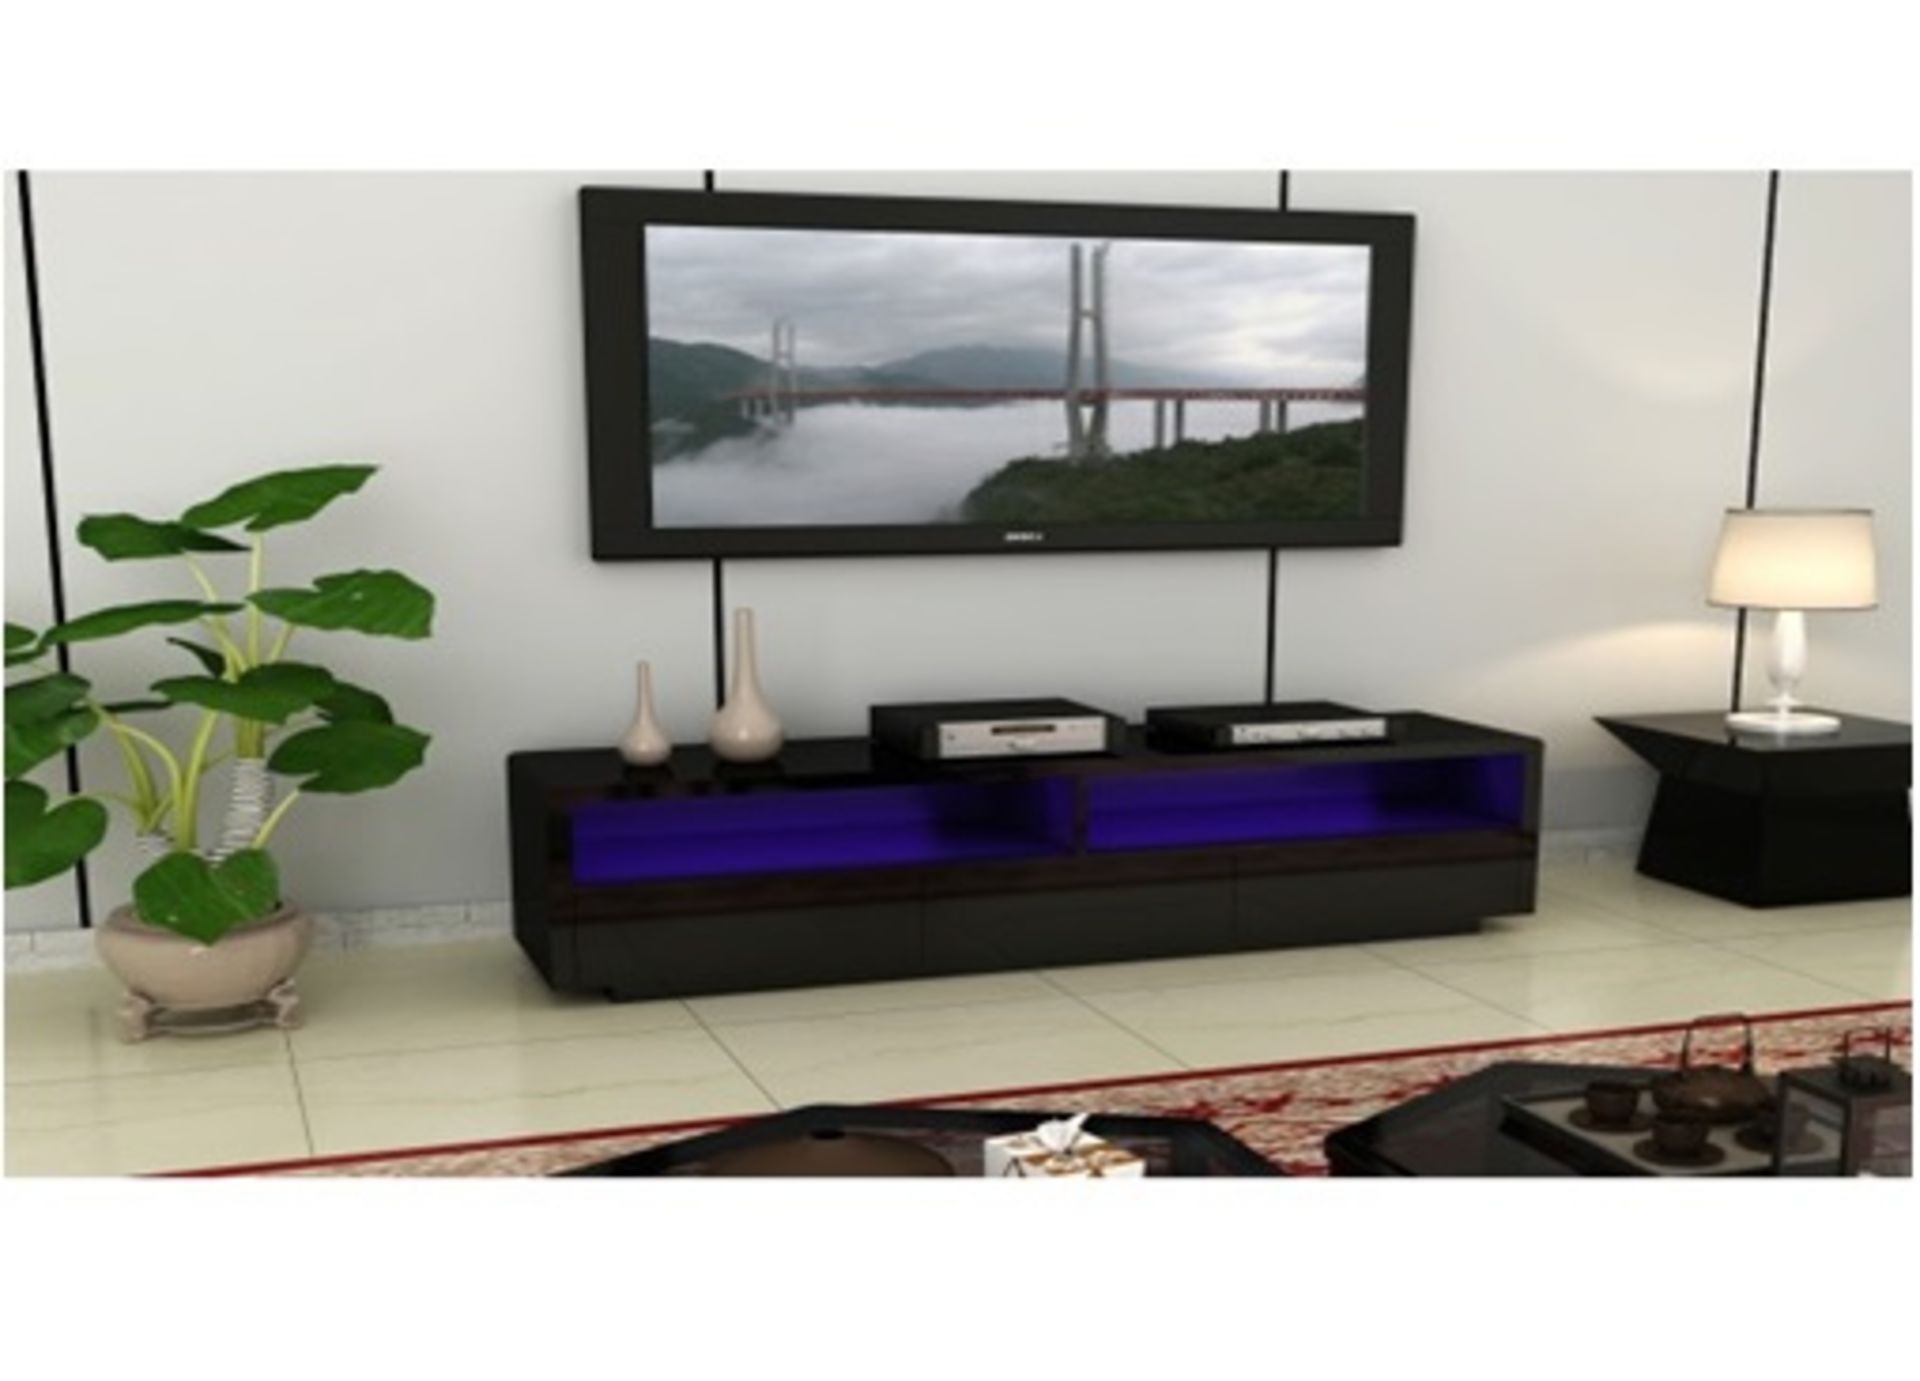 1 x Designer Black High Gloss LED Light TV Unit With Drawers - Ref TVS354/BLKLED (Brand New &